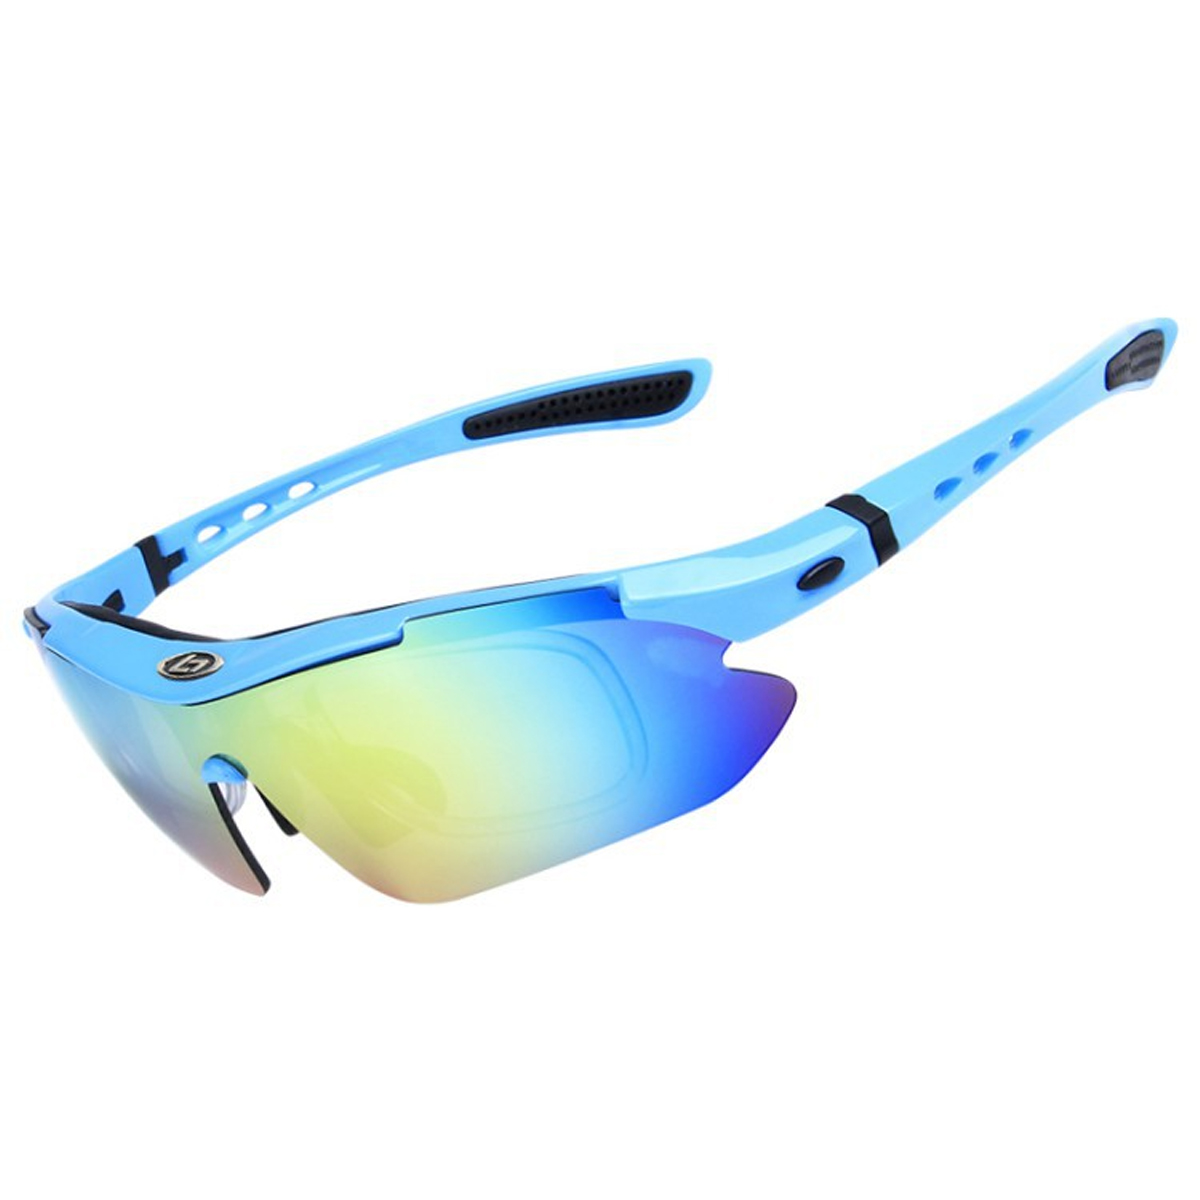 LEIGO Fahrradbrille Radsportbrille, Blau Fluoreszierendes Sportbrille, Fahrradbrillen, polarisierte Radsportbrille, Sonnenbrille